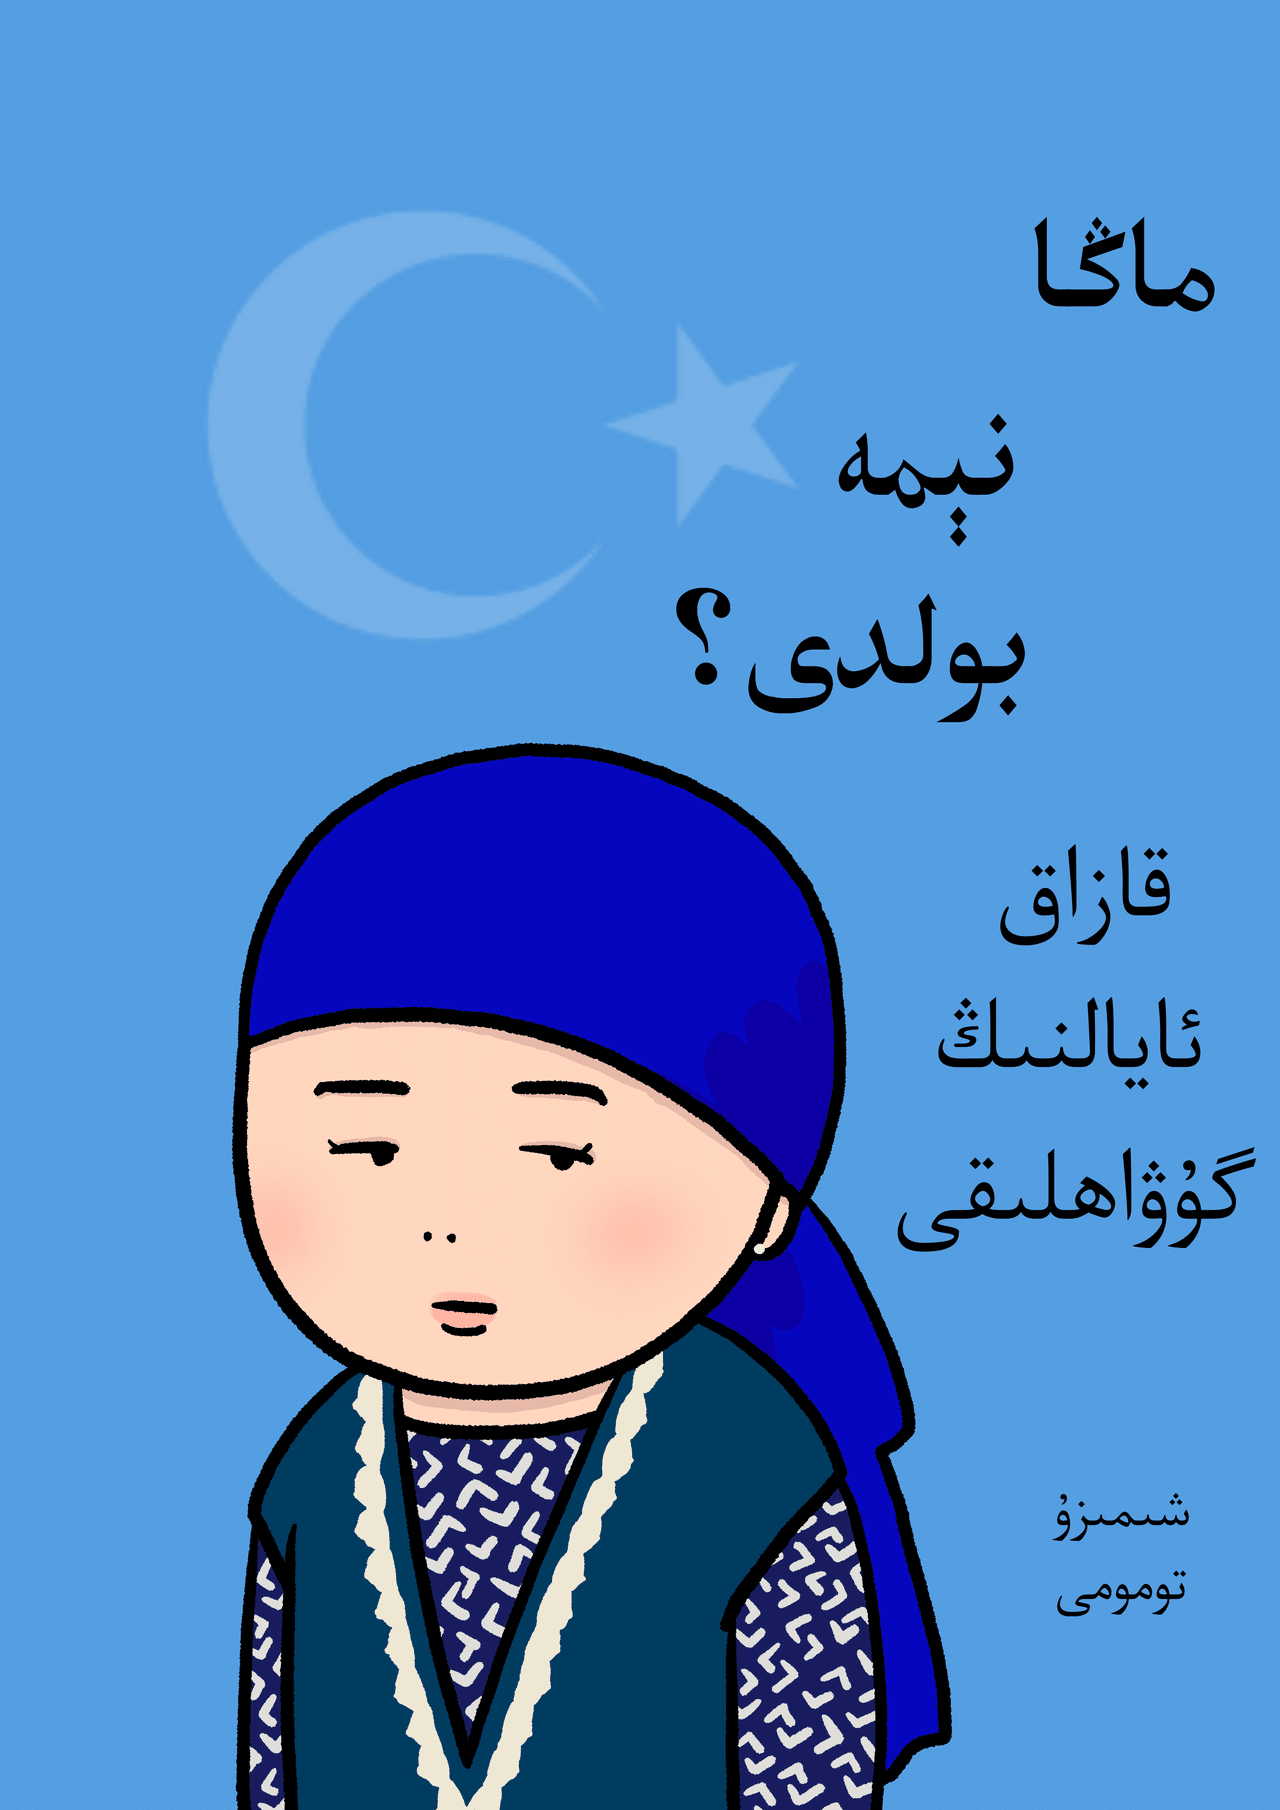 私の身に起きたこと とあるカザフ人女性の証言 ウイグル語アラビア文字翻訳版 清水ともみ Note